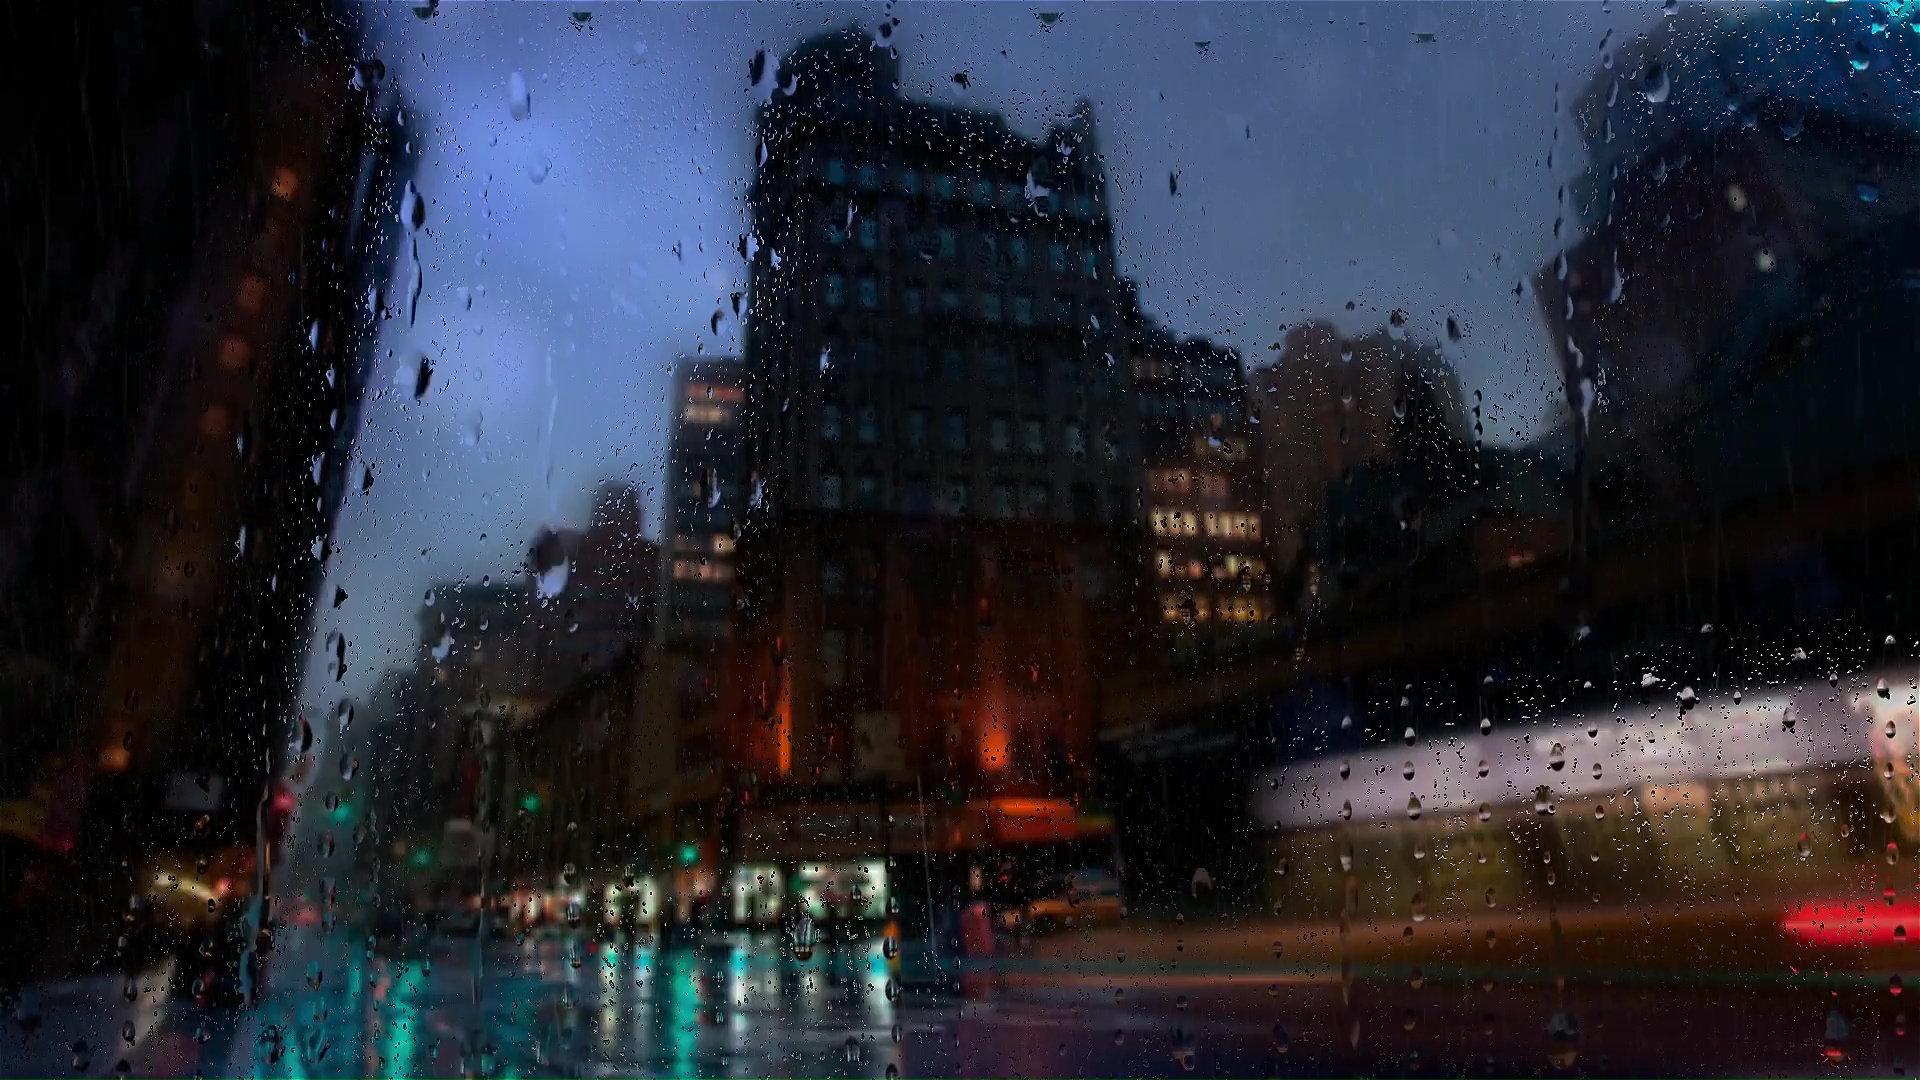 City Rain Live Wallpaper - MoeWalls